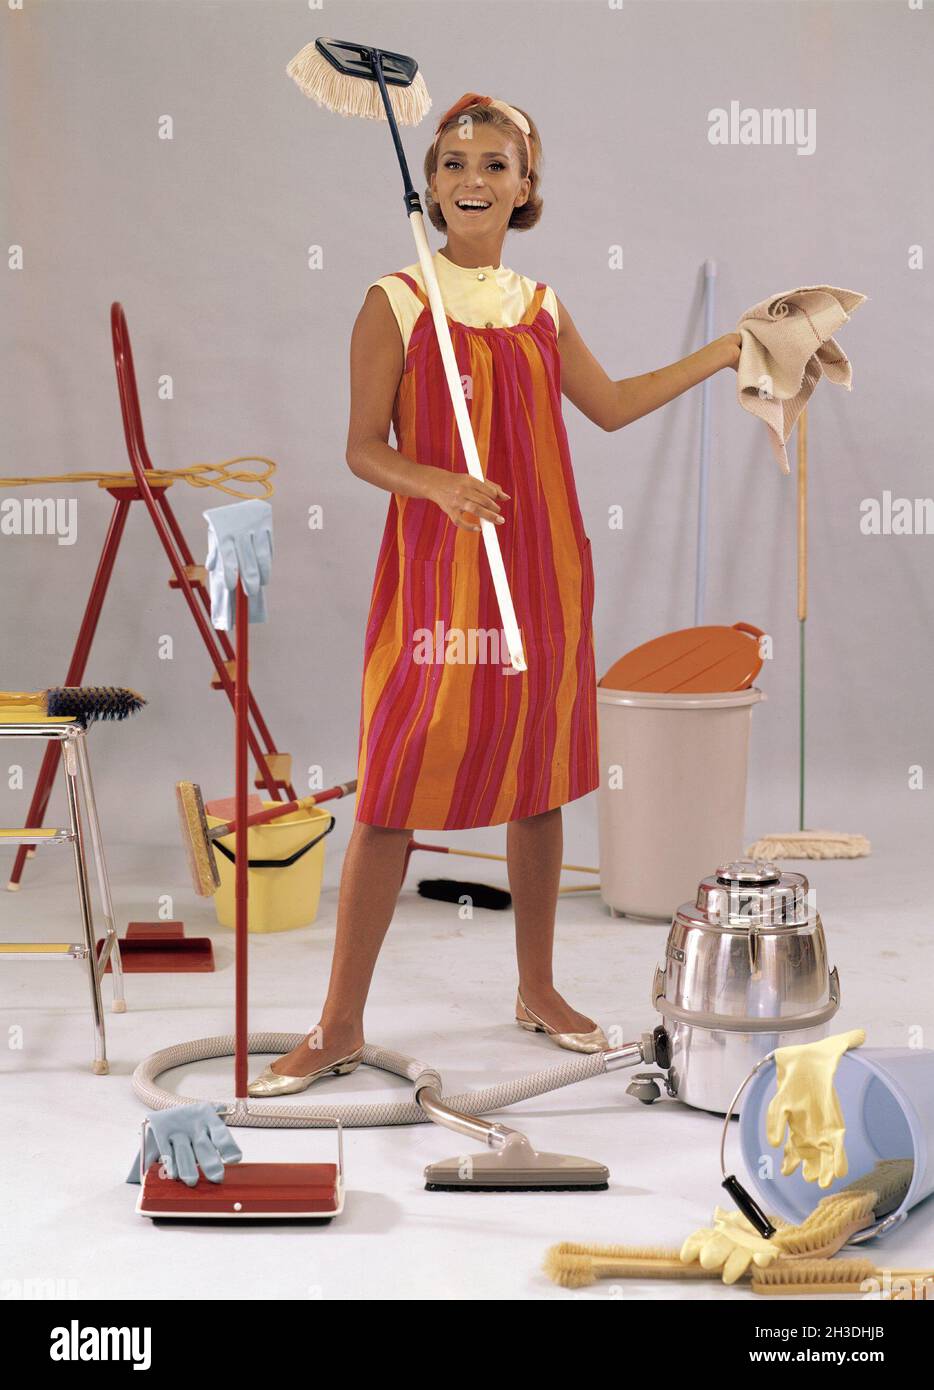 Journée de nettoyage dans les années 1960.Une jeune femme est photographiée avec des balais, un aspirateur, des seaux, des chiffons.Objets et objets généralement utilisés dans les années 1960 lors du nettoyage de la maison. Banque D'Images